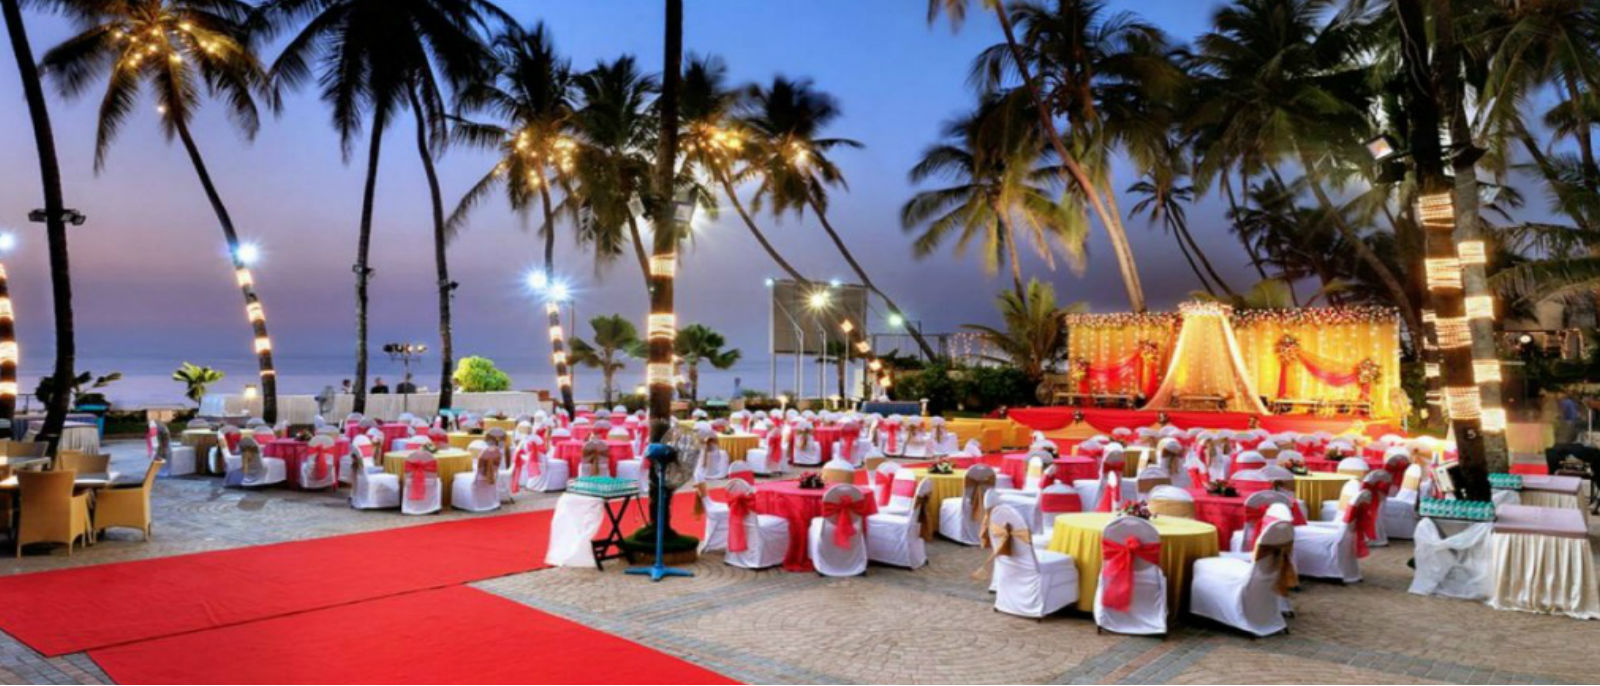 Luxury Wedding Venues in Mumbai – Mark Wedding By Priyancka Raaj Jain